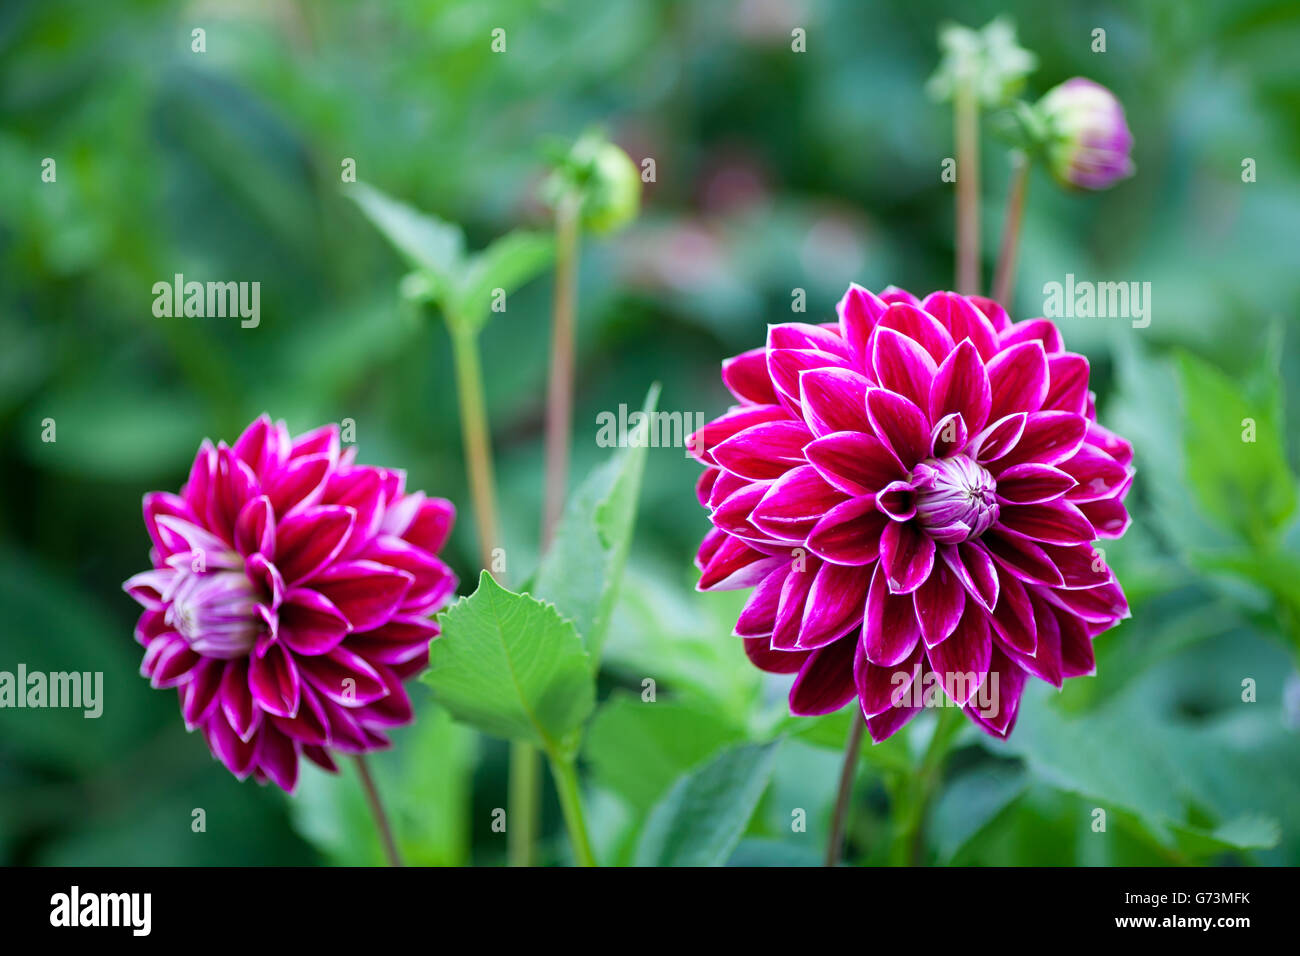 Rosa Fiore Dahlia in piena fioritura closeup Foto Stock